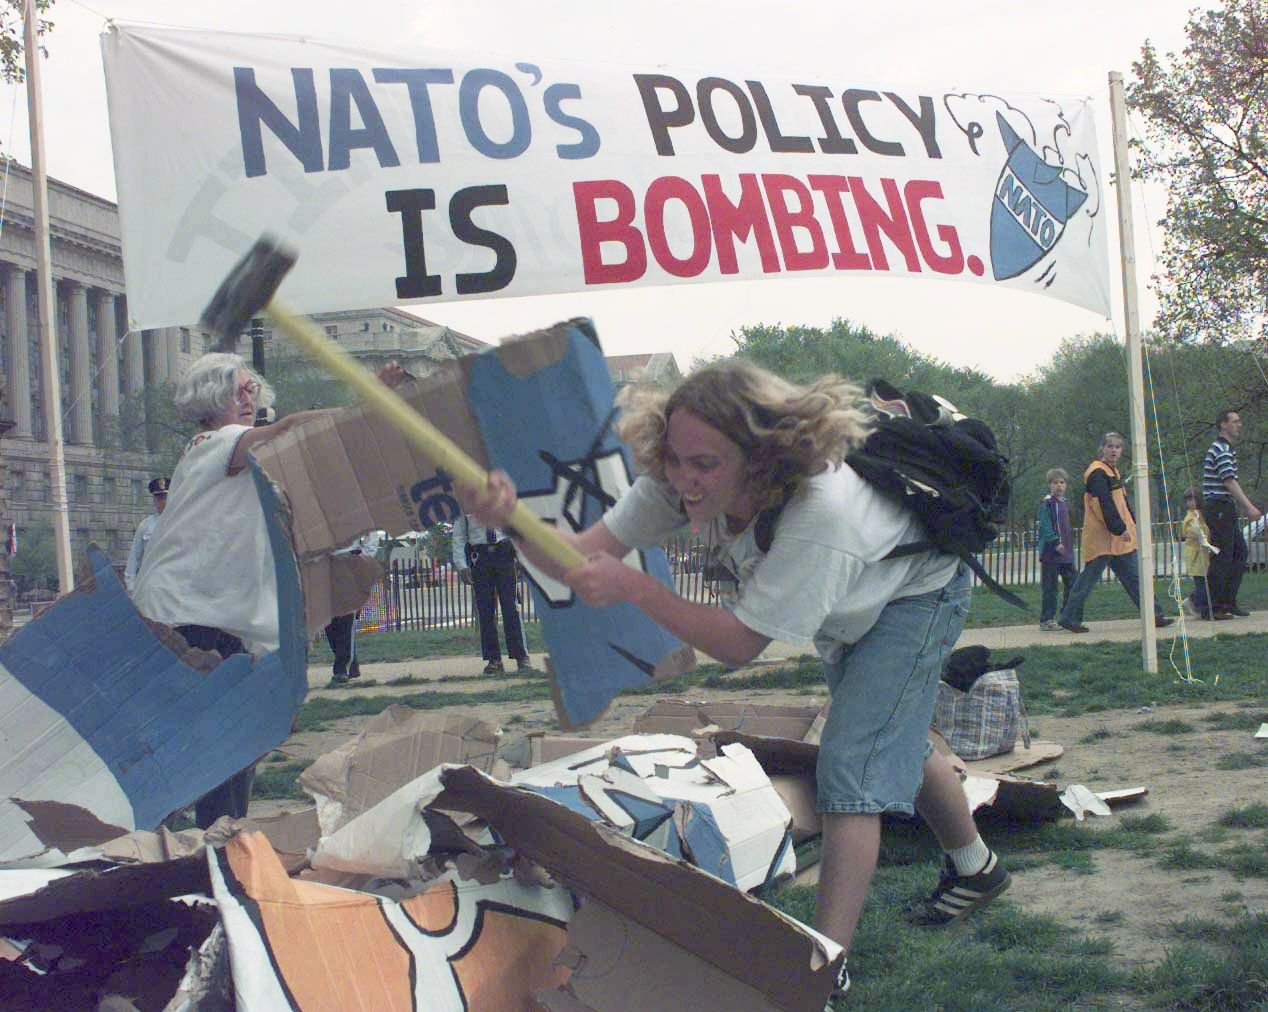 23 април 1999 г., Вашингтон: Активистка, протестираща срещу бомбардировките на НАТО в Югославия, унищожава макет на ядрено оръжие недалеч от мястото, където се провежда среща по повод 50 г. НАТО 23 април 1999 г., Вашингтон: Активистка, протестираща срещу бомбардировките на НАТО в Югославия, унищожава макет на ядрено оръжие недалеч от мястото, където се провежда среща по повод 50 г. НАТО